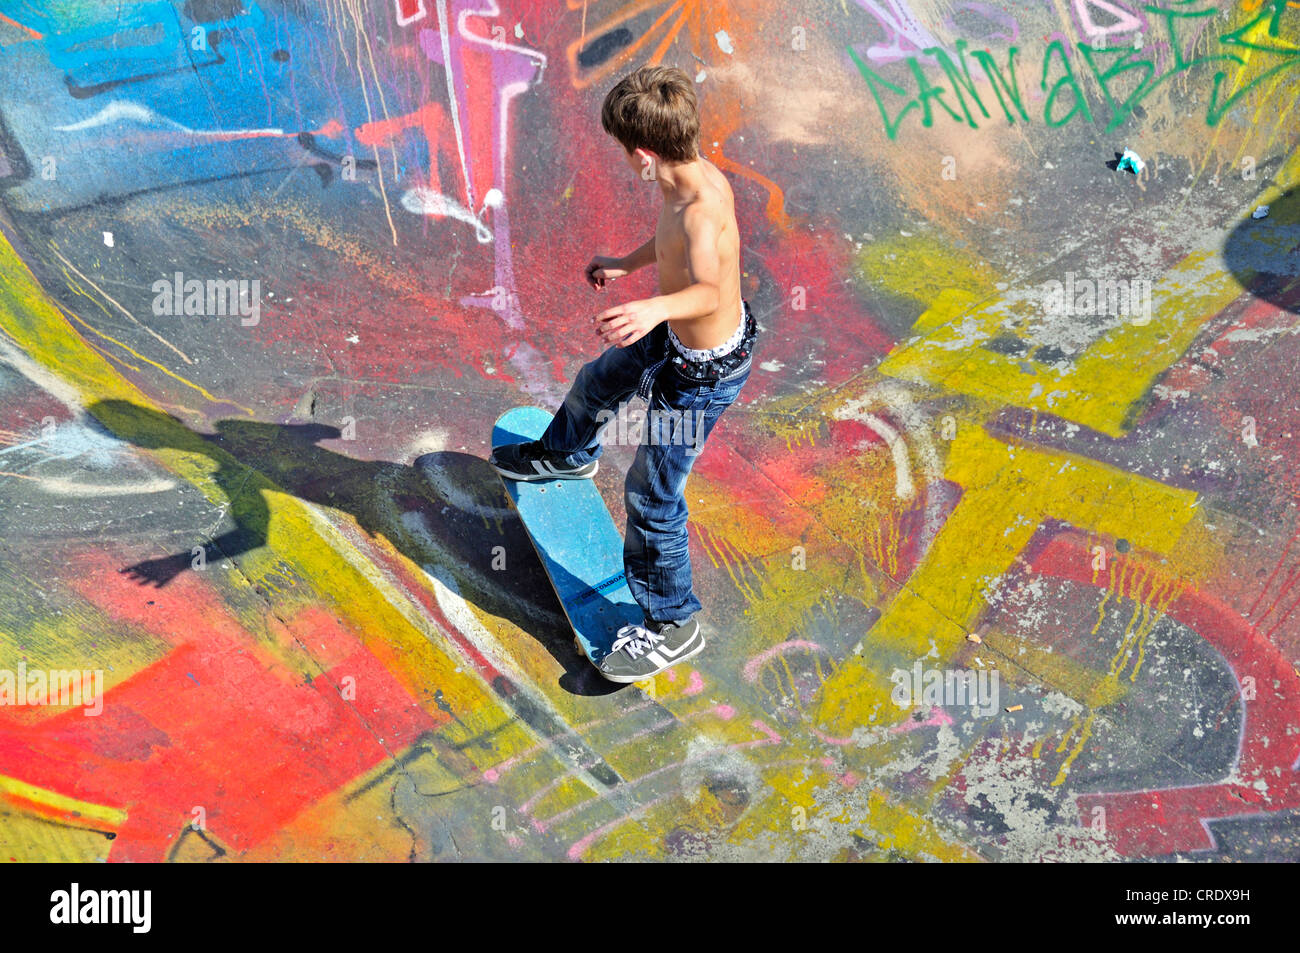 La planche, 10 ans, bol d'un rampe de skate, Bruxelles, Belgique, Europe, PublicGround Banque D'Images